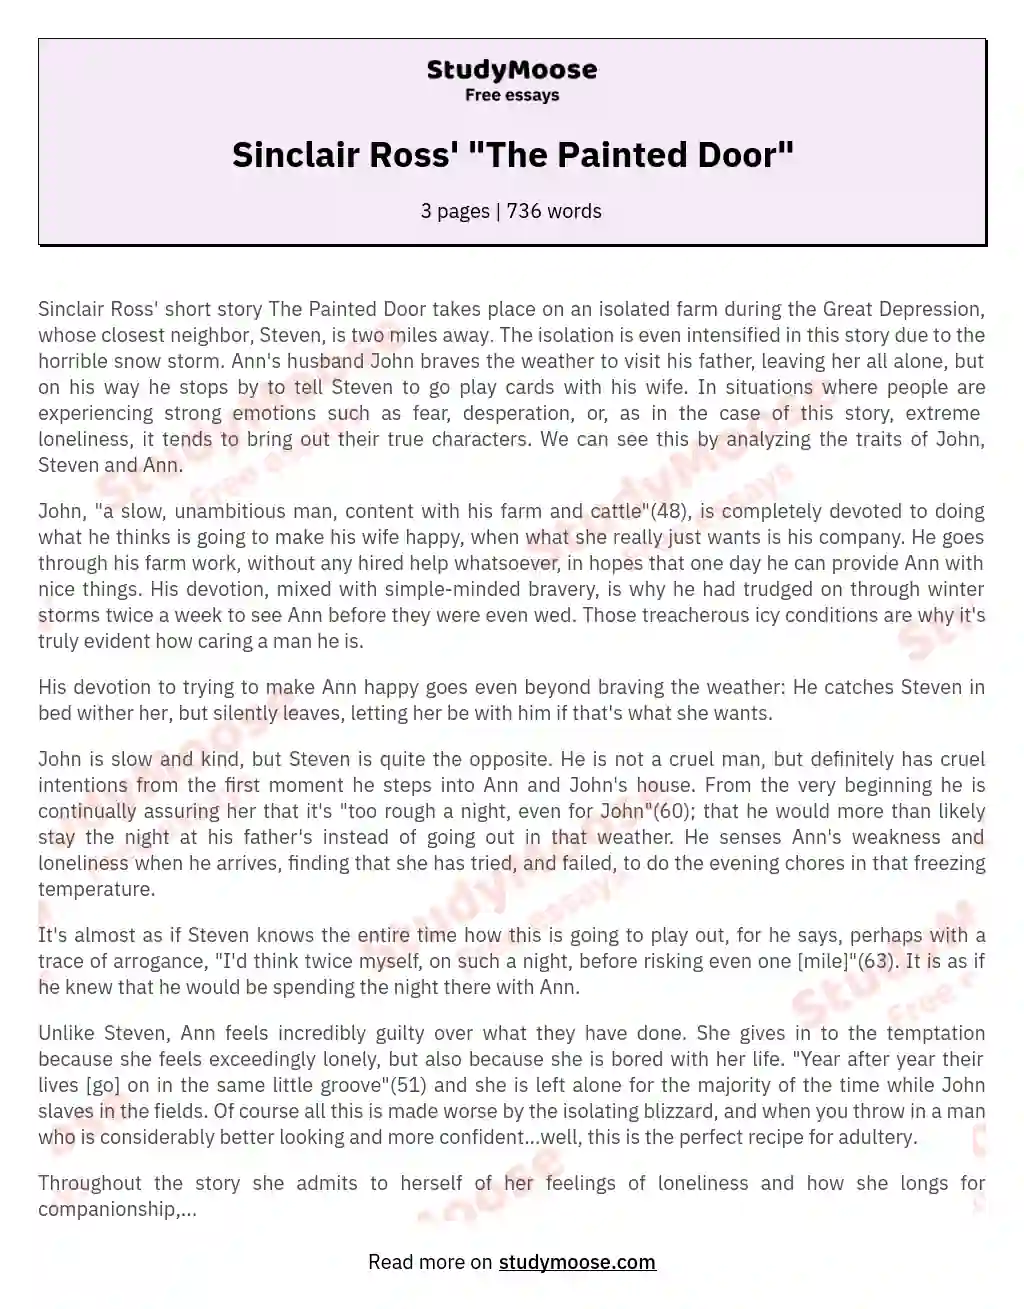 Sinclair Ross' "The Painted Door" essay